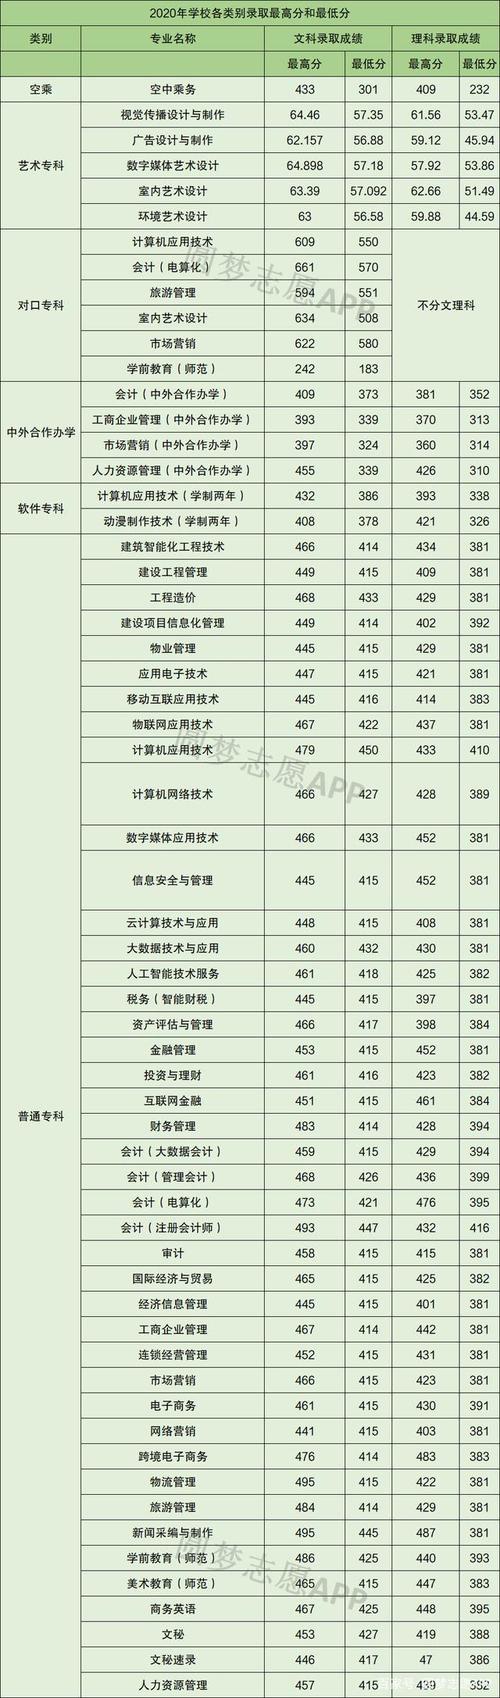 3,河南农业职业学院录取分数线2020 官方未公布相关数据.